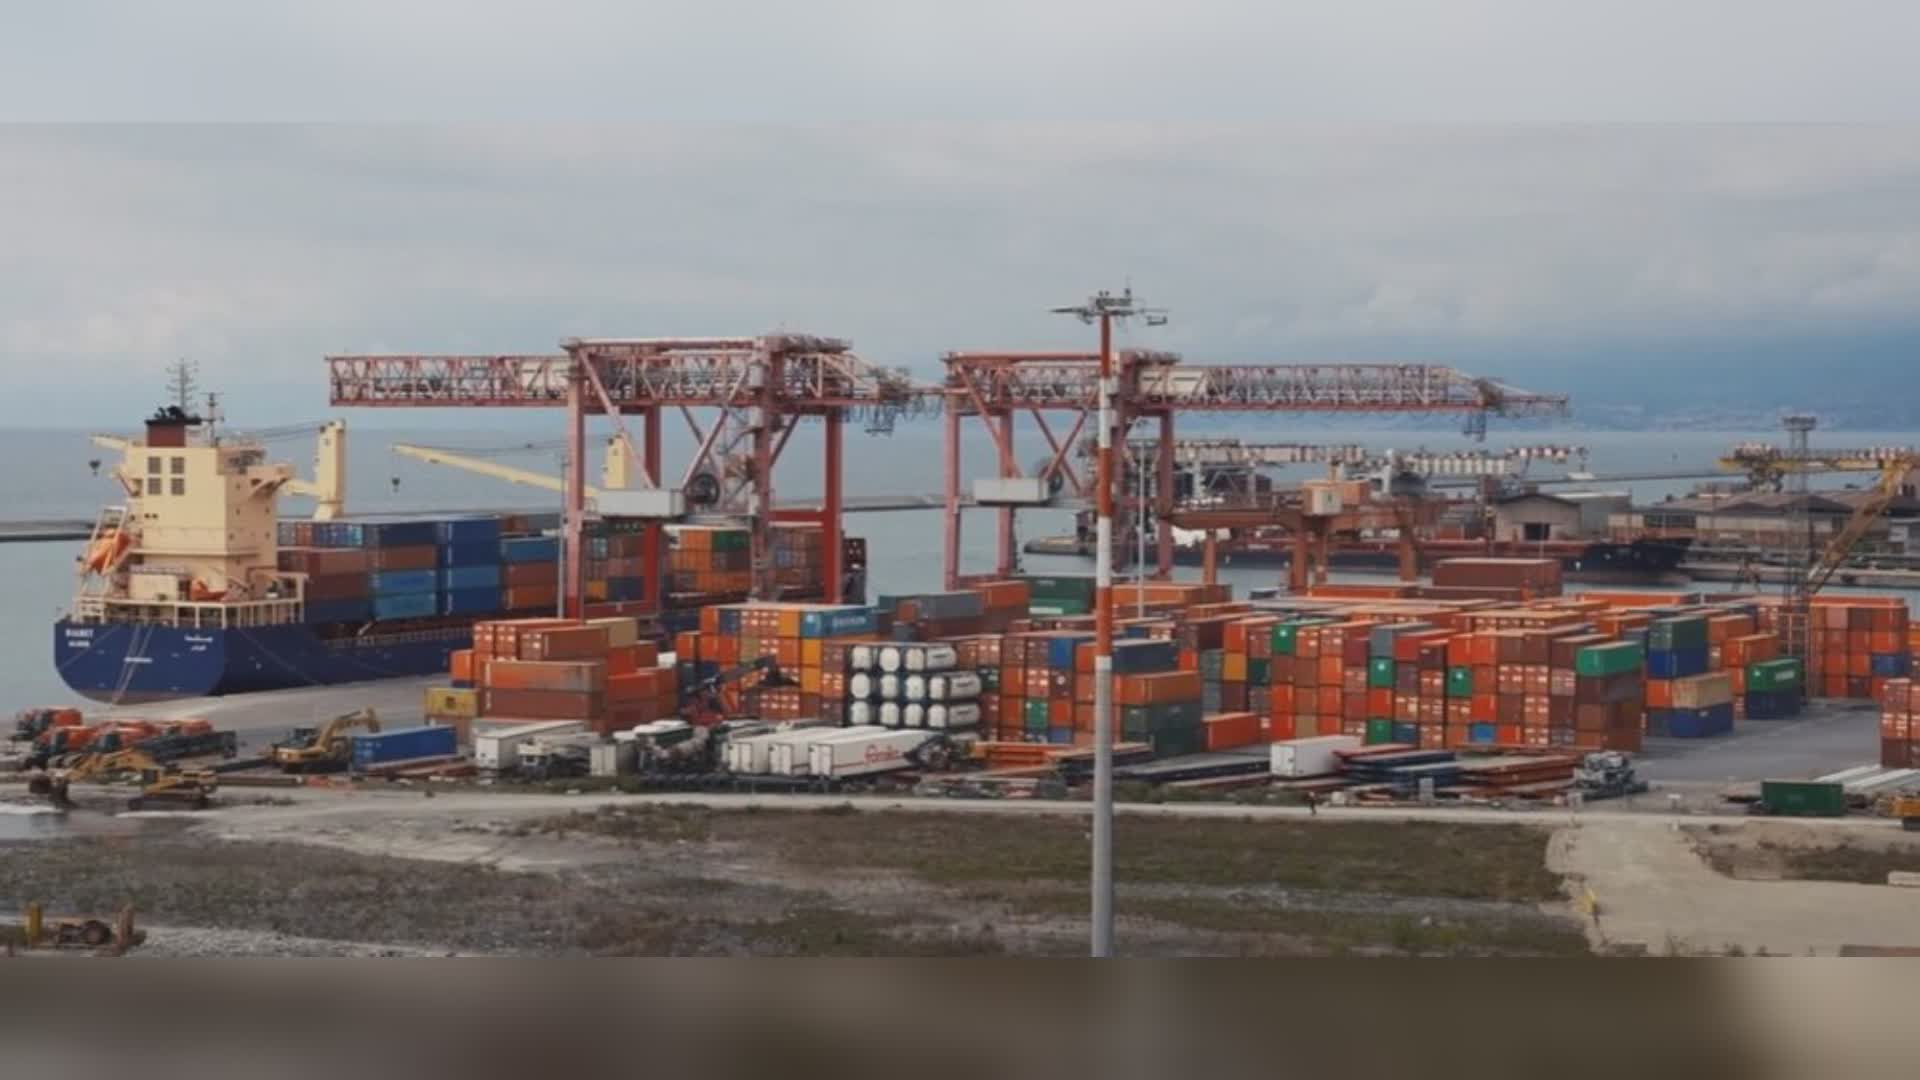 Genova, Cisl e Fit: "Subito un presidio medico per il primo soccorso in porto"